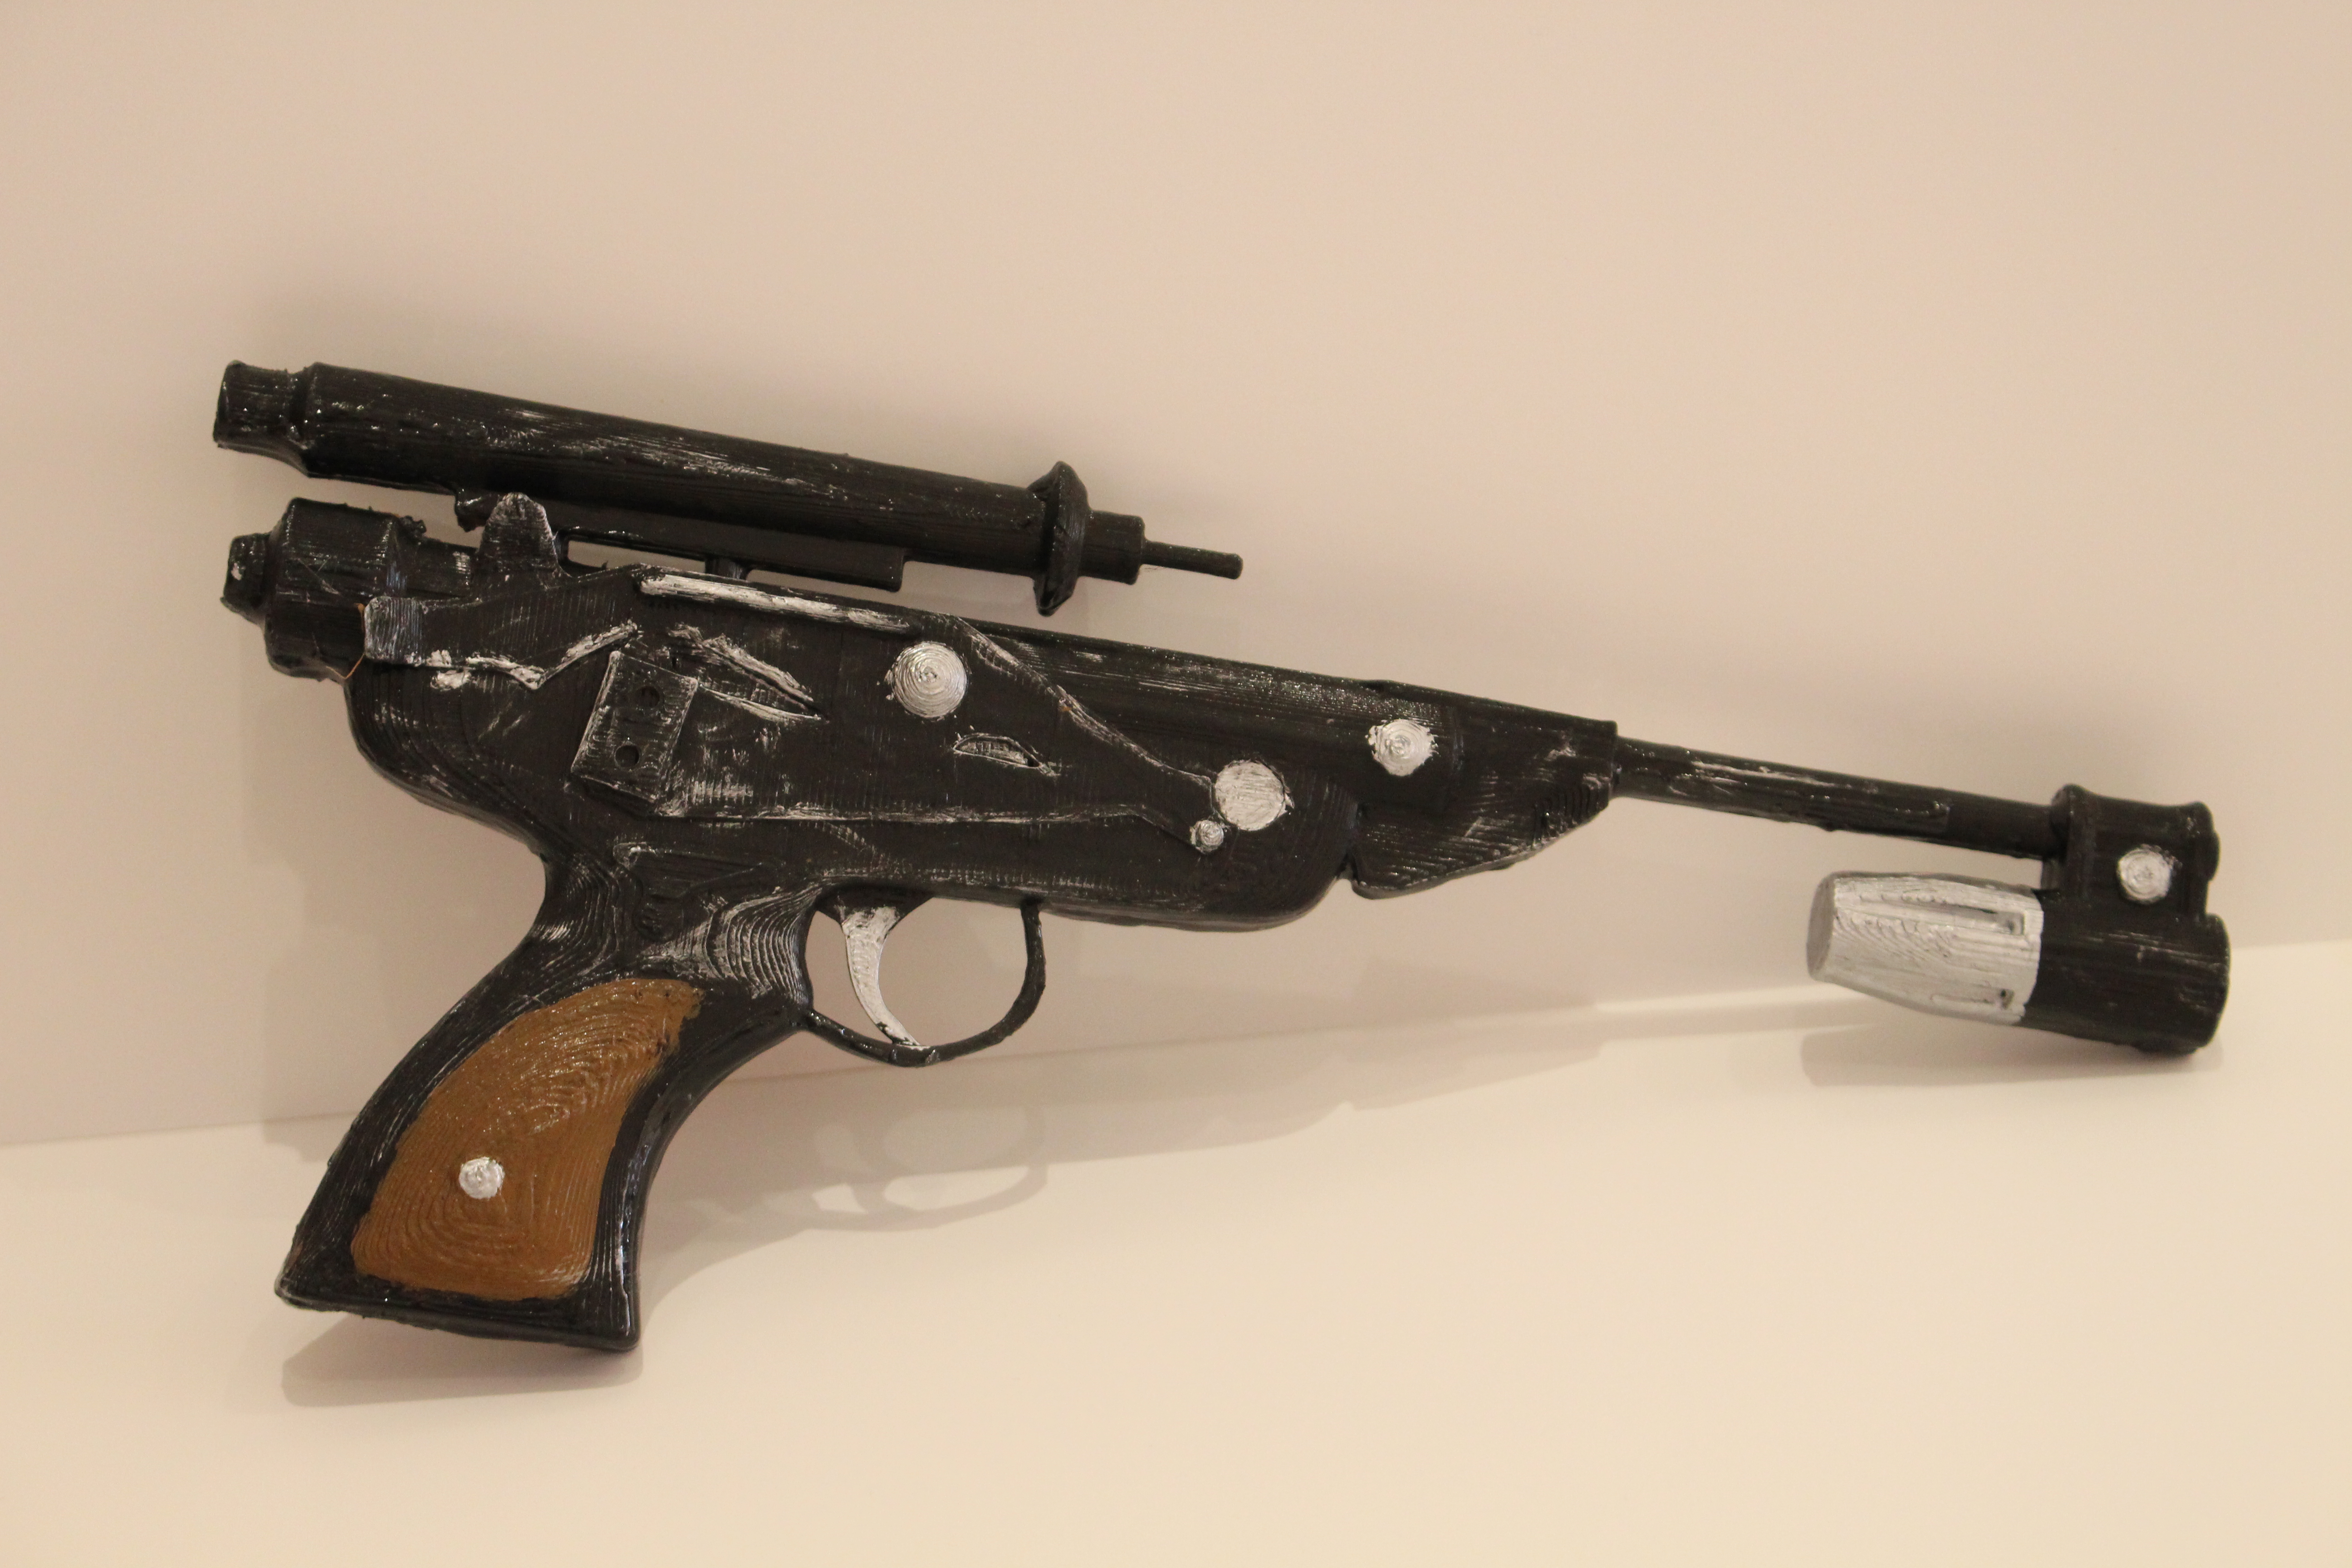 DL-18 blaster pistol from Starwars and Starwars Battlefront